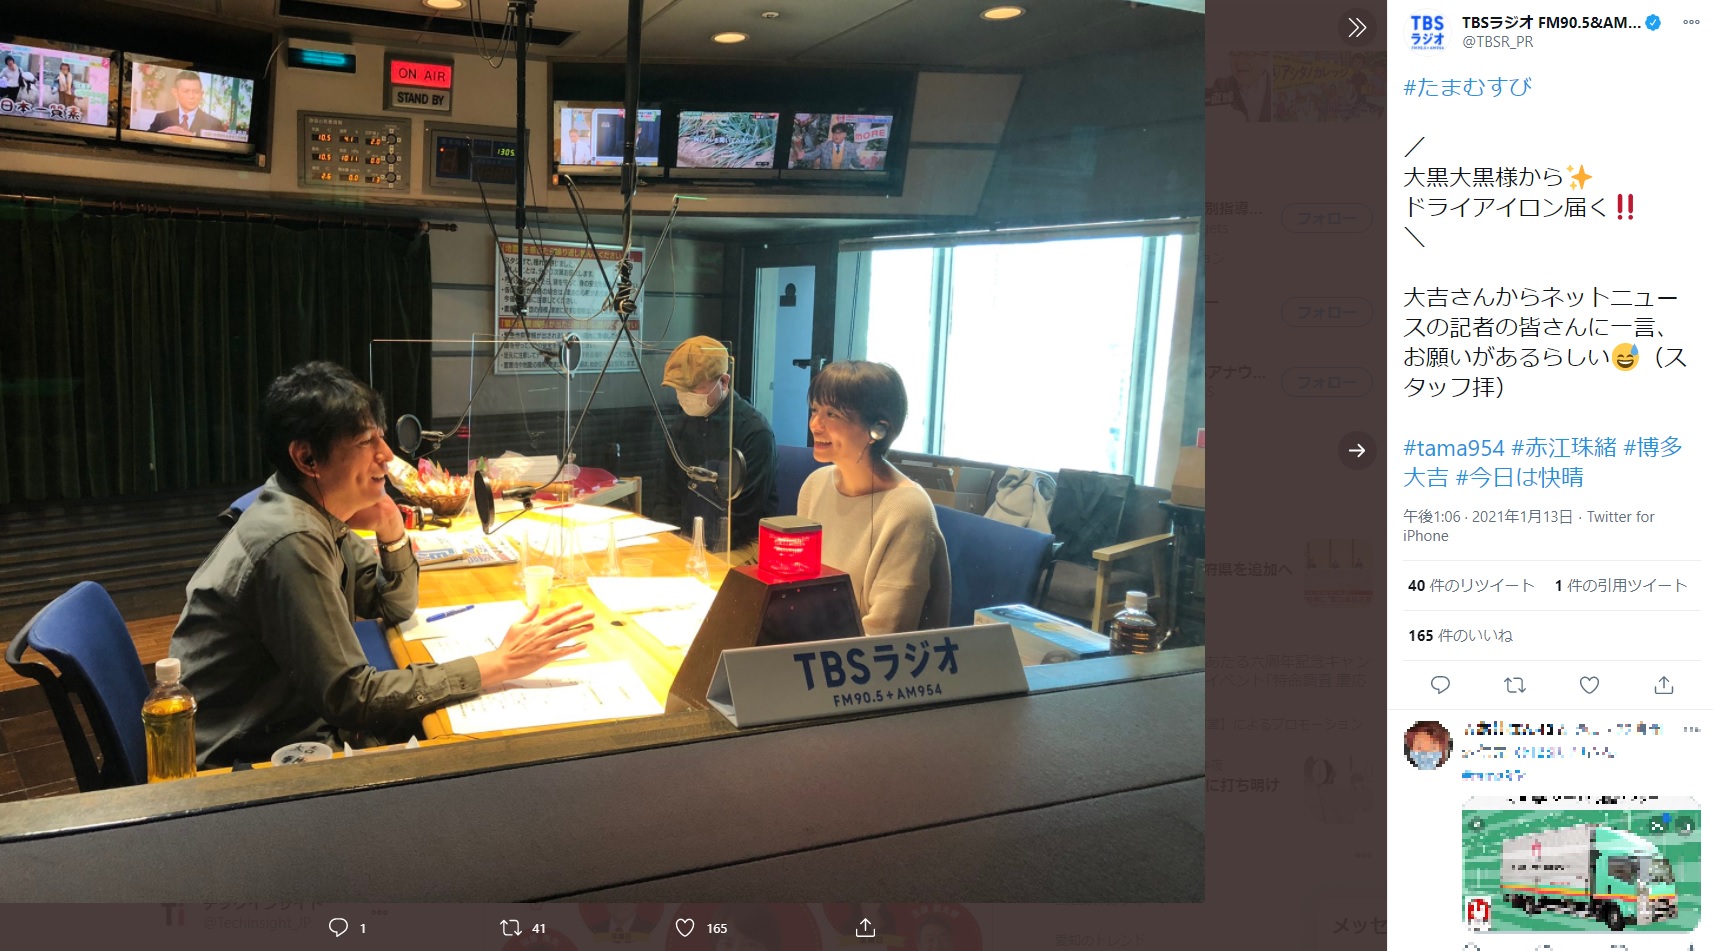 スタジオでの博多大吉と赤江珠緒（画像は『TBSラジオ FM90.5＆AM954　2021年1月13日付Twitter「＃たまむすび 大黒大黒様から ドライアイロン届く」』のスクリーンショット）